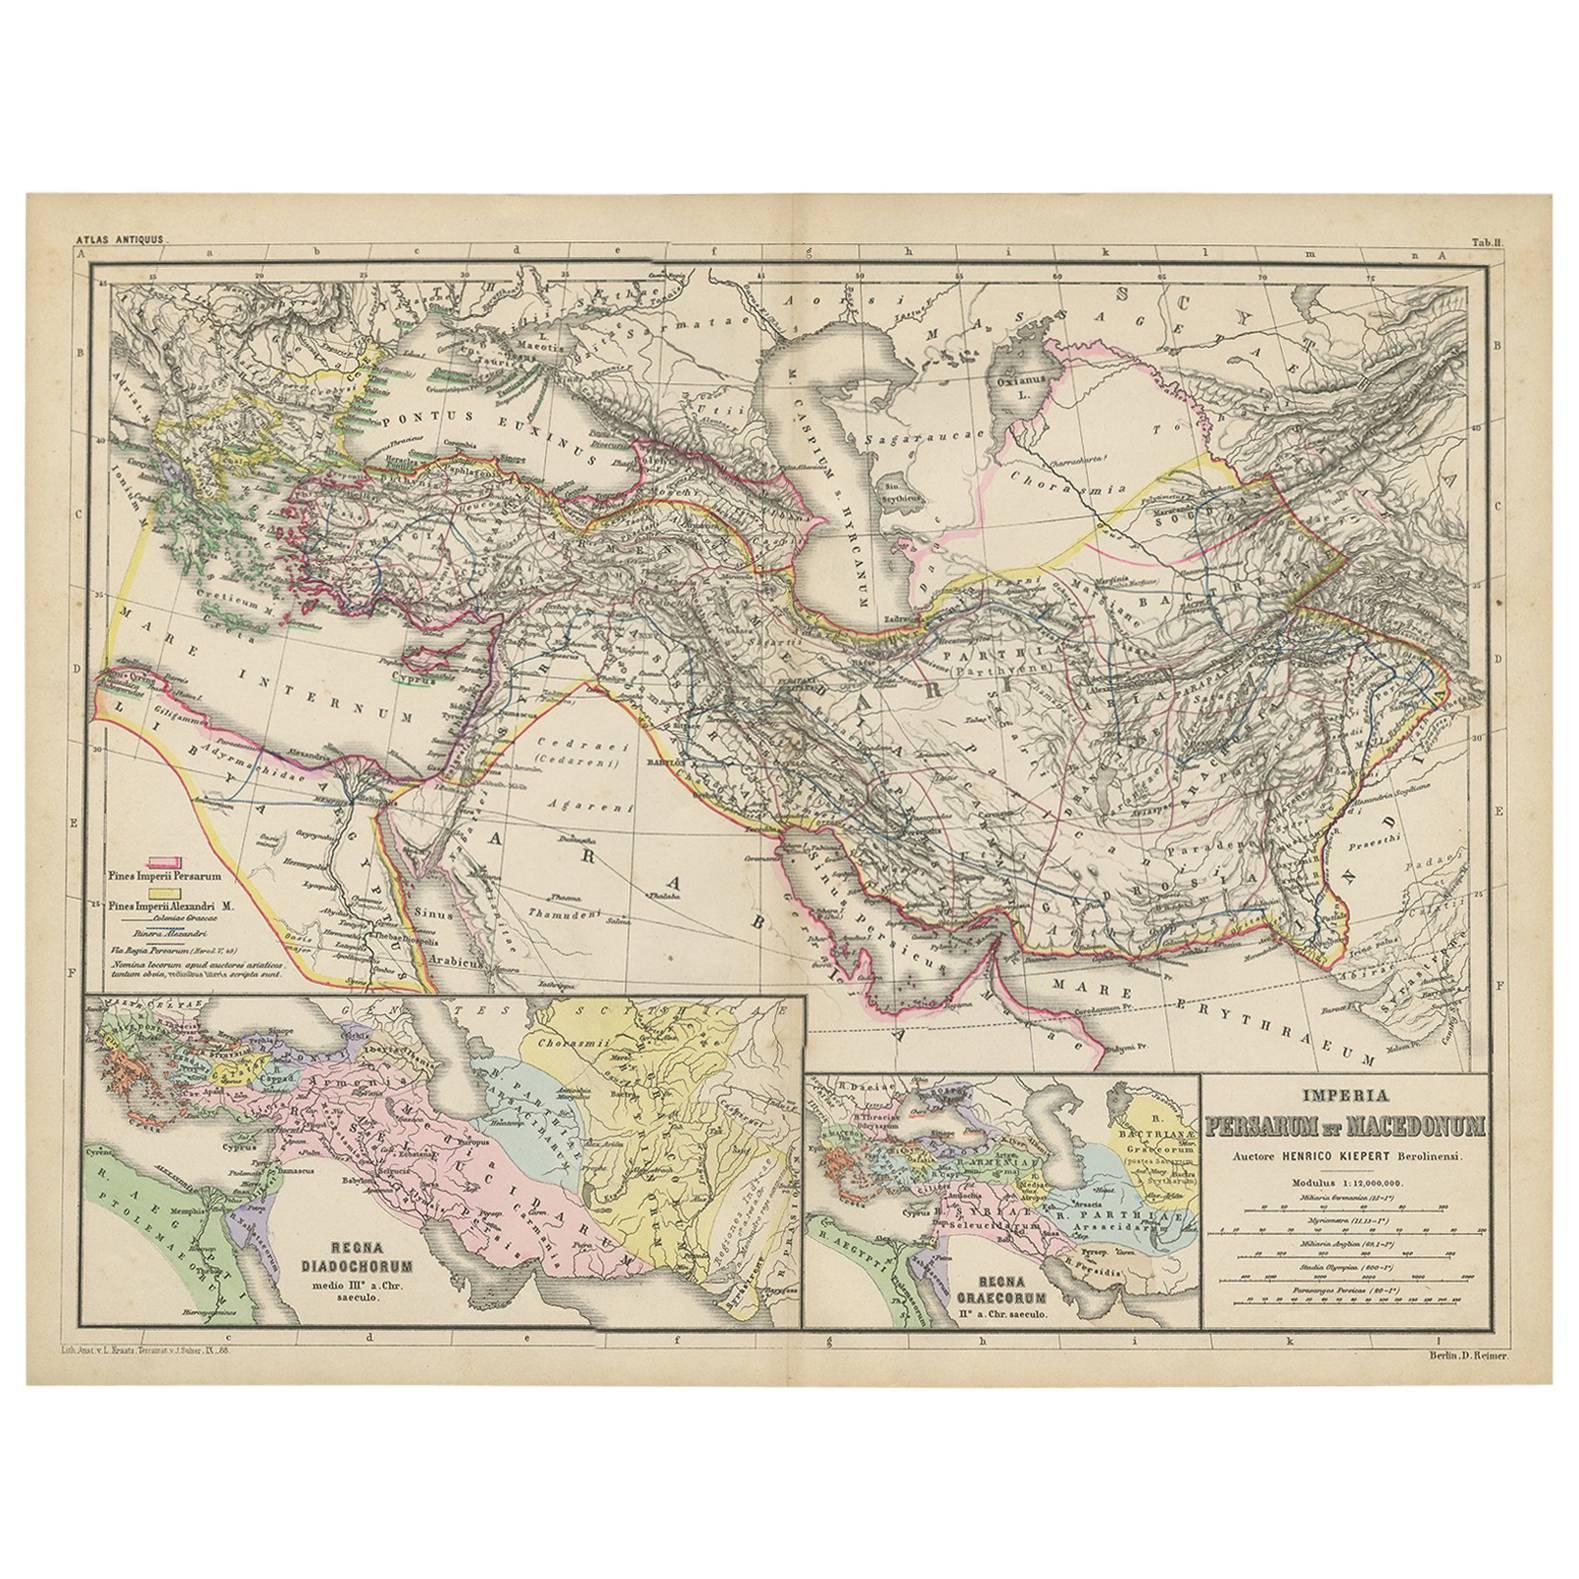 Carte ancienne d'une partie de l'Empire romain par H. Kiepert, vers 1870